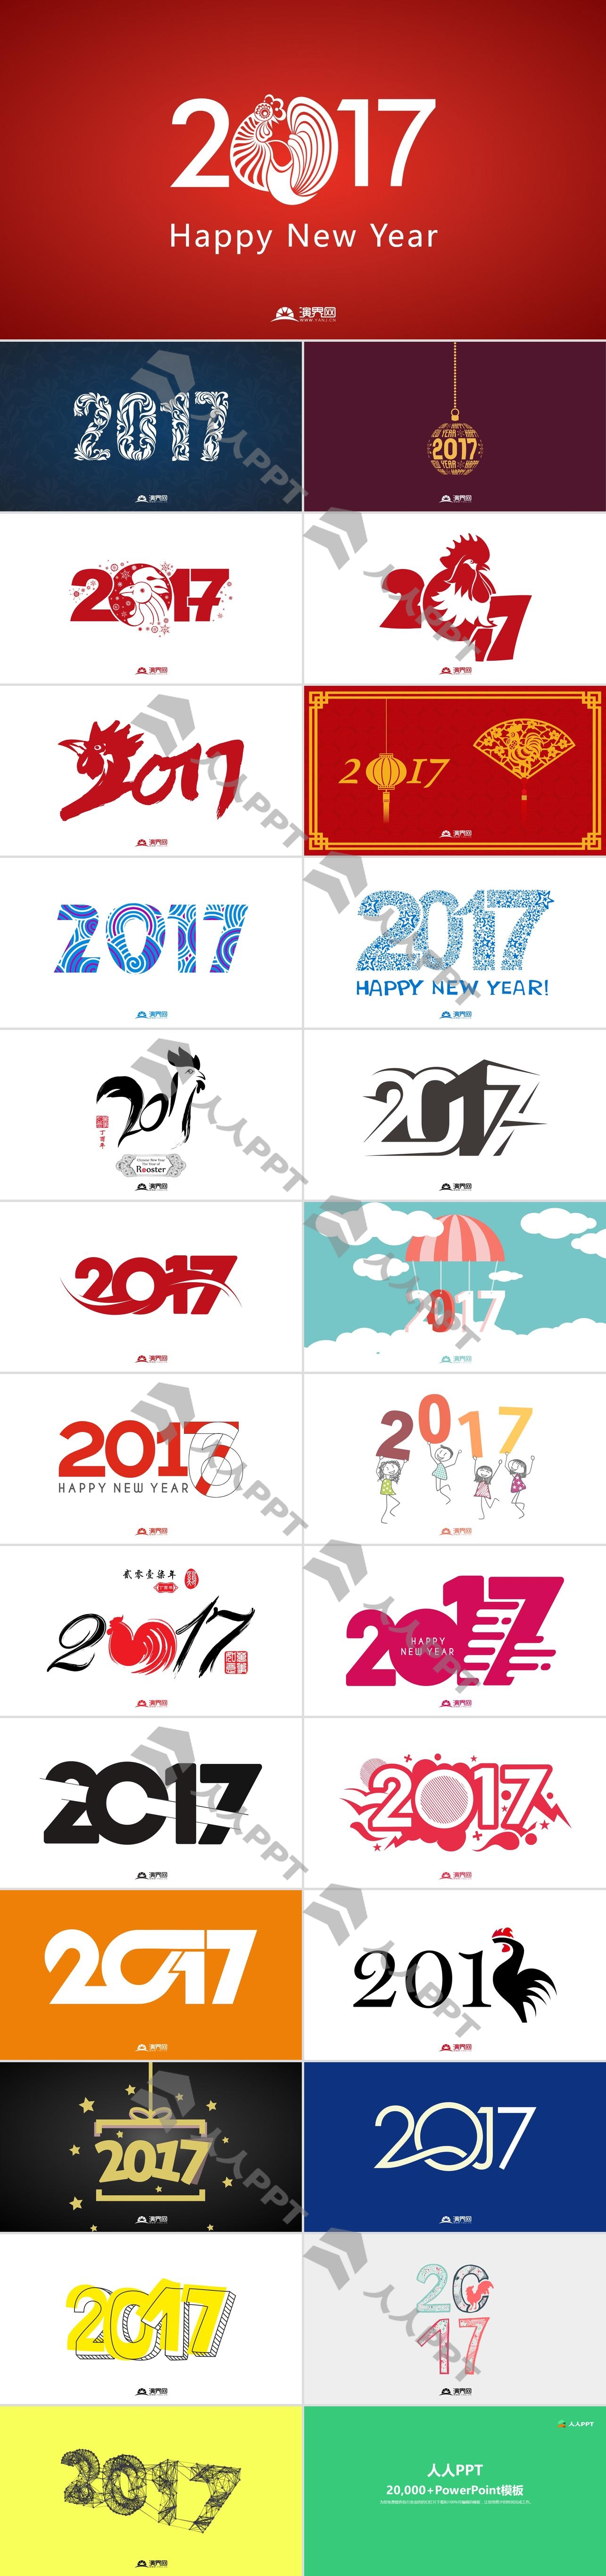 26张可编辑的矢量2020春节新年PPT素材长图